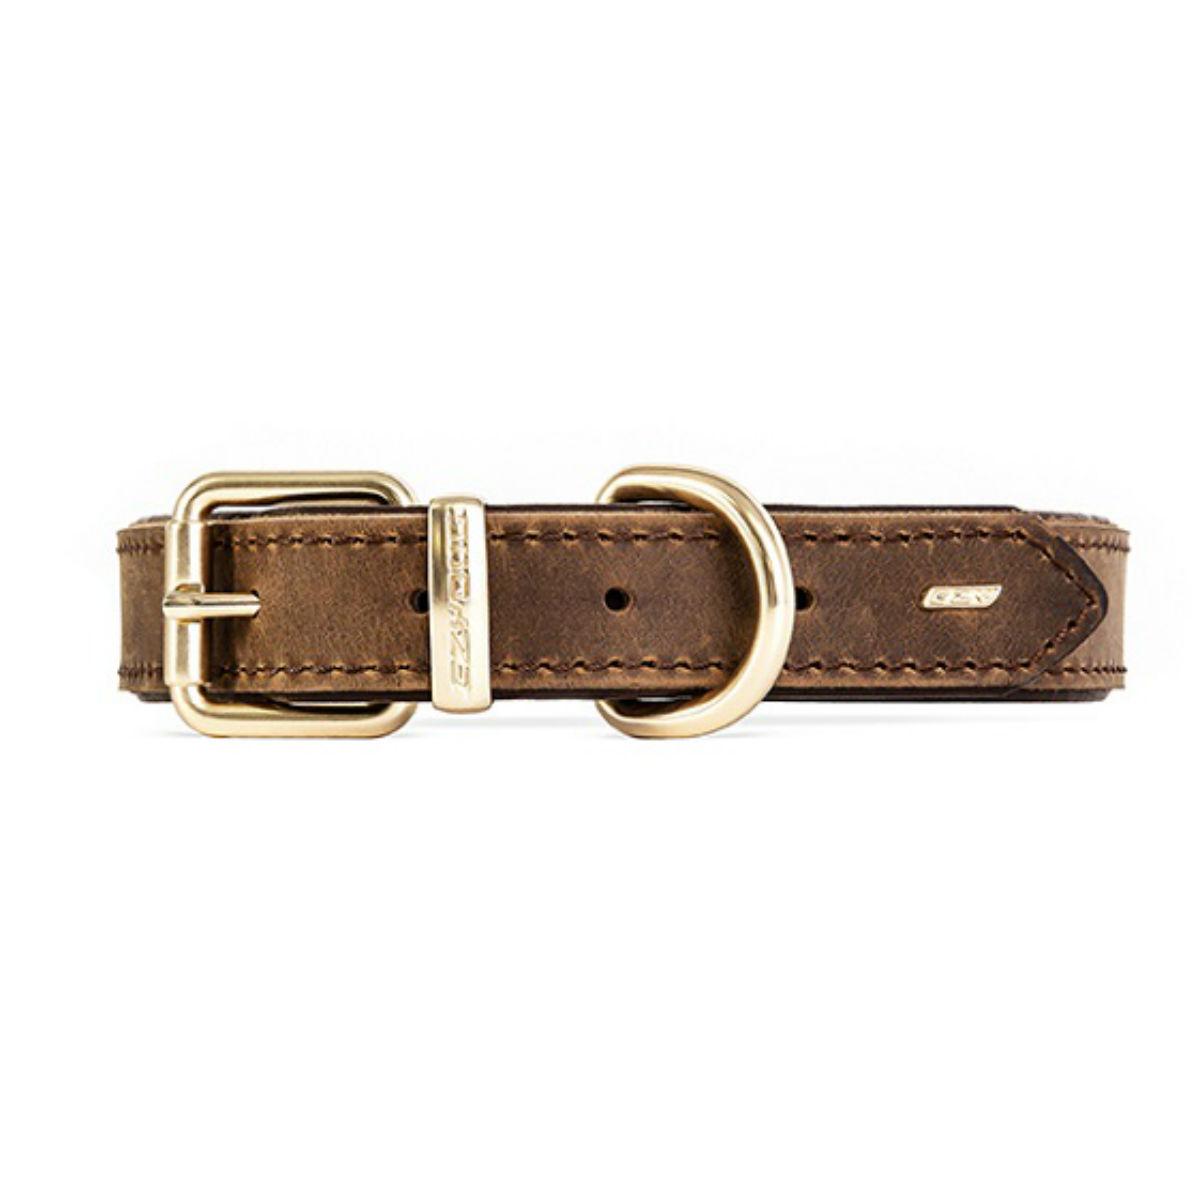 EzyDog Oxford Leather Dog Collar - Brown